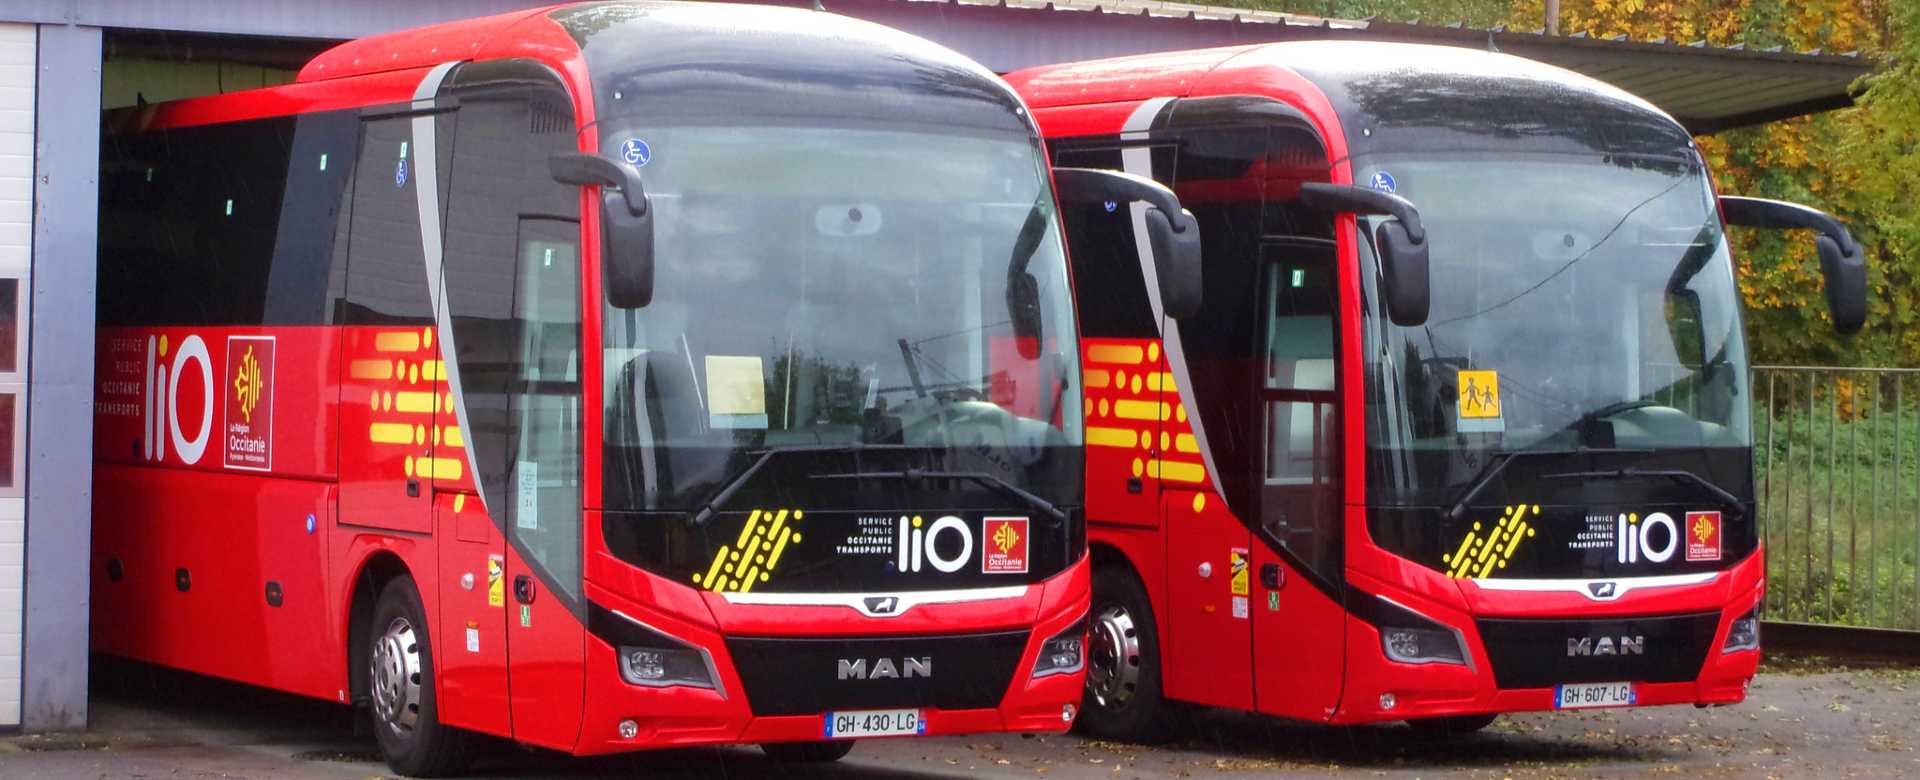 Bus ligne 211 en Aveyron, de Mur-de-Barrez à Aurillac (liO Occitanie)